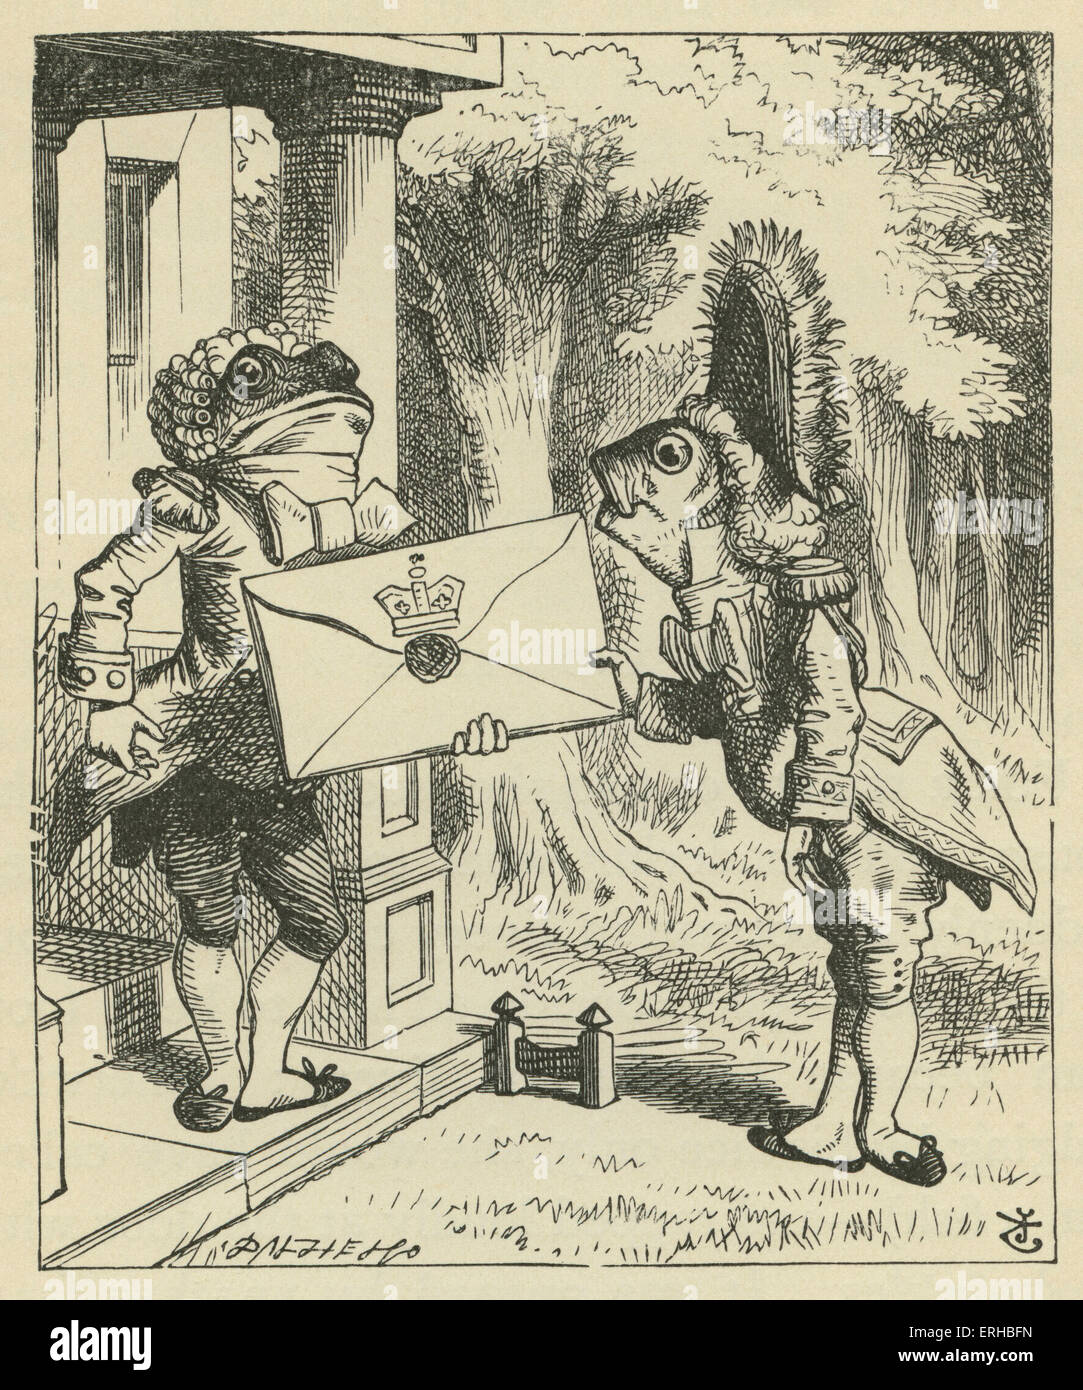 La Fish-Footman, Lewis Carroll (1832-1898) libro "Alice's Adventures in Wonderland". Ilustrado por John Tenniel. Un Foto de stock